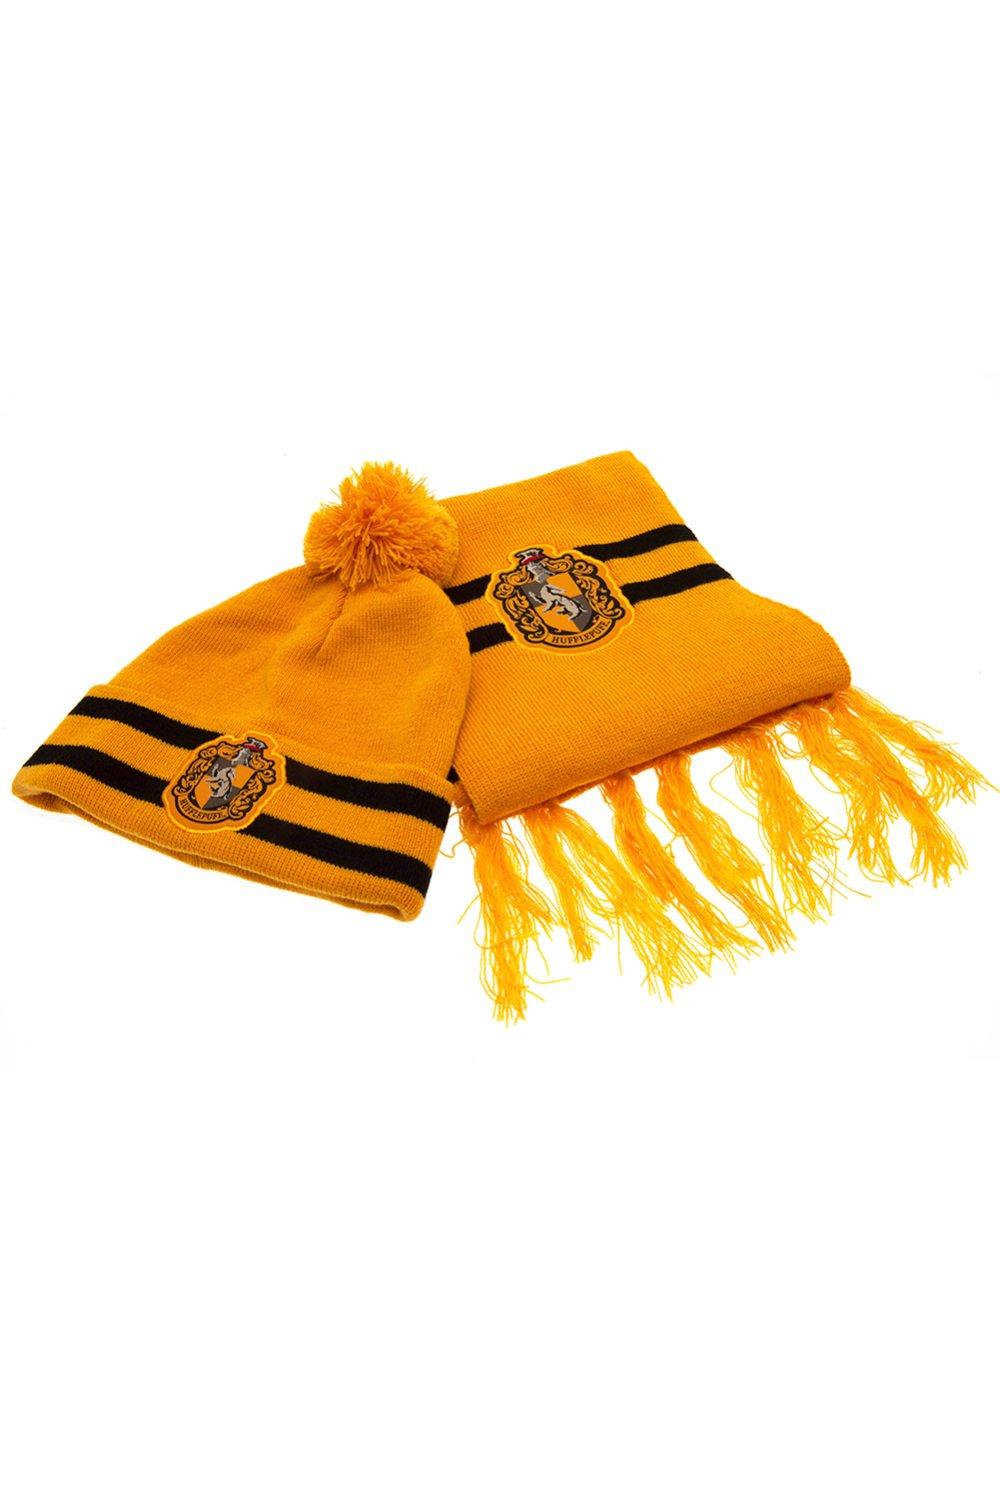 Комплект из шляпы и шарфа с гербом Хаффлпаффа Harry Potter, желтый